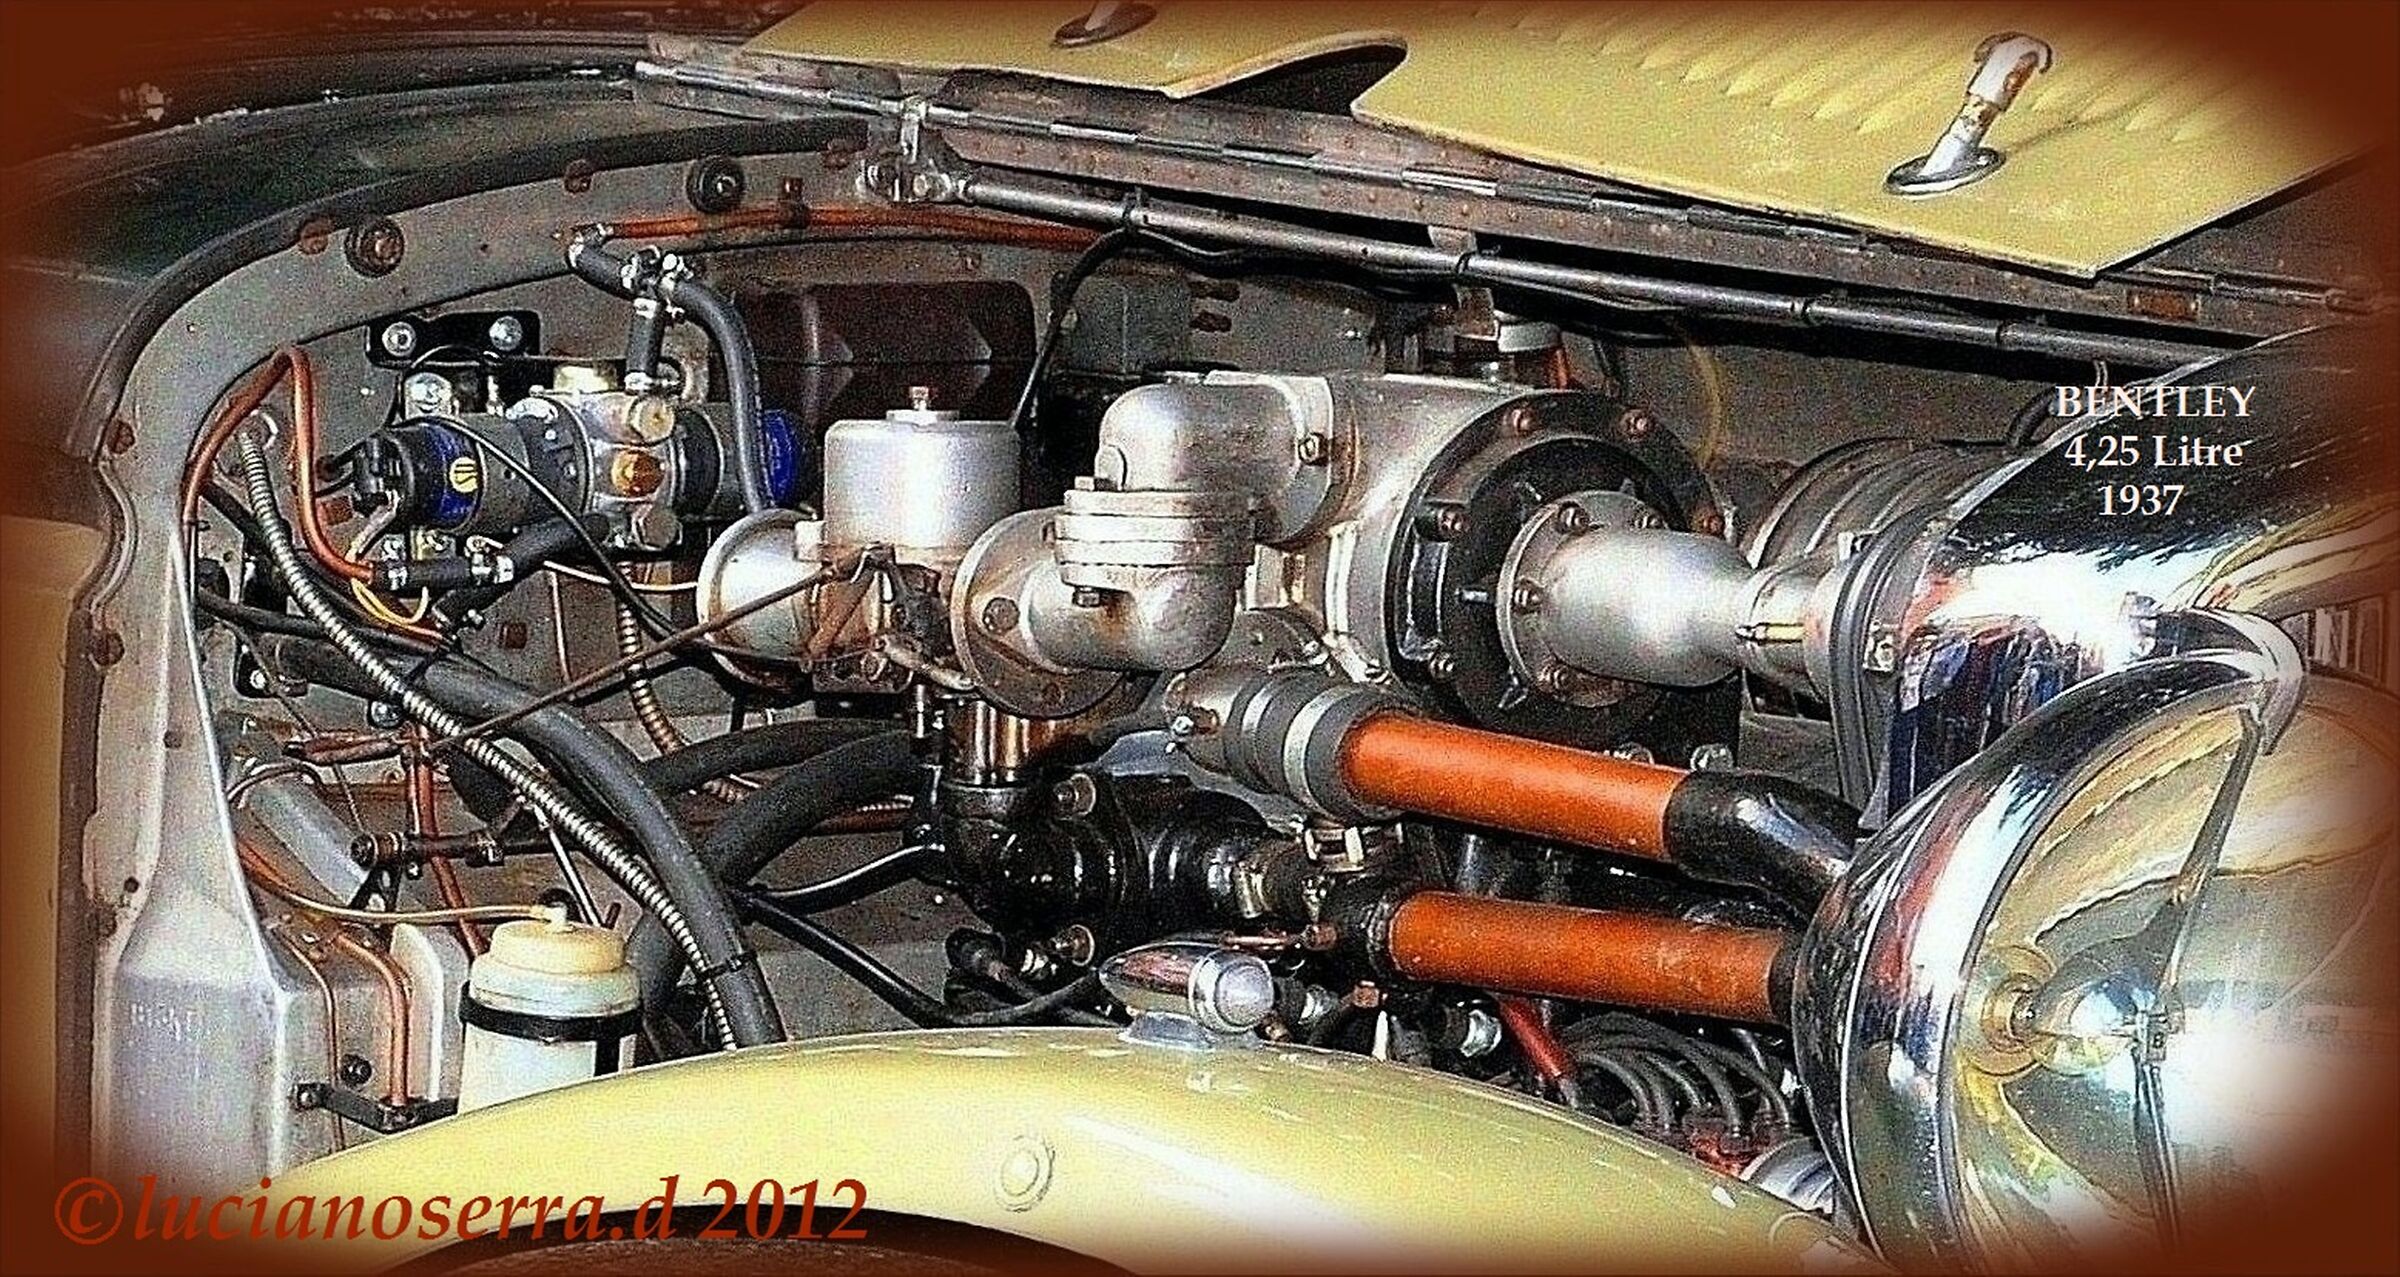 Propulsore Bentley 4,25 Litre - 1937...